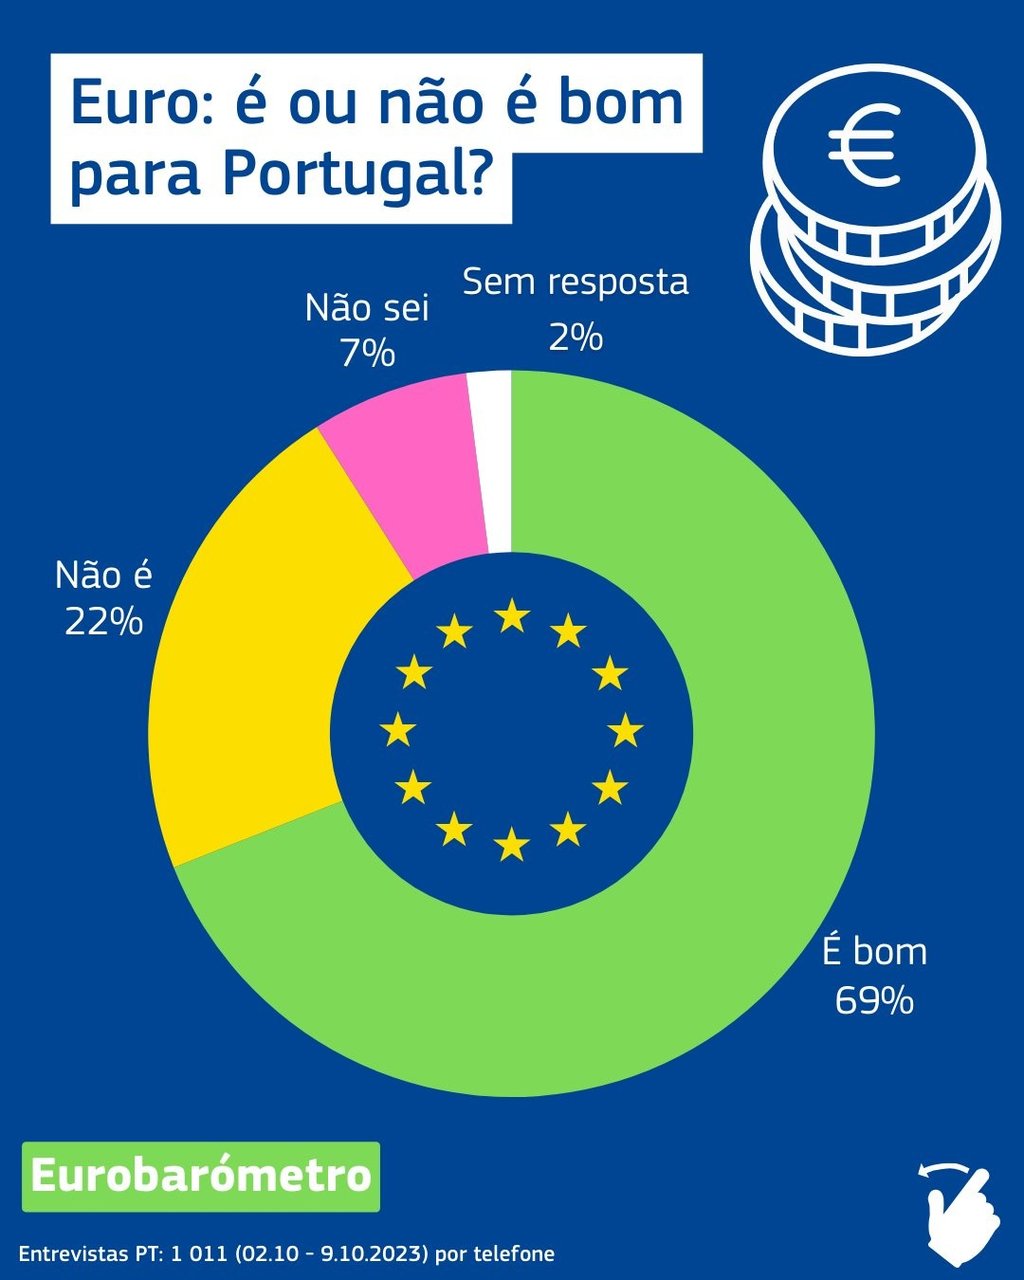 Eurobarómetro